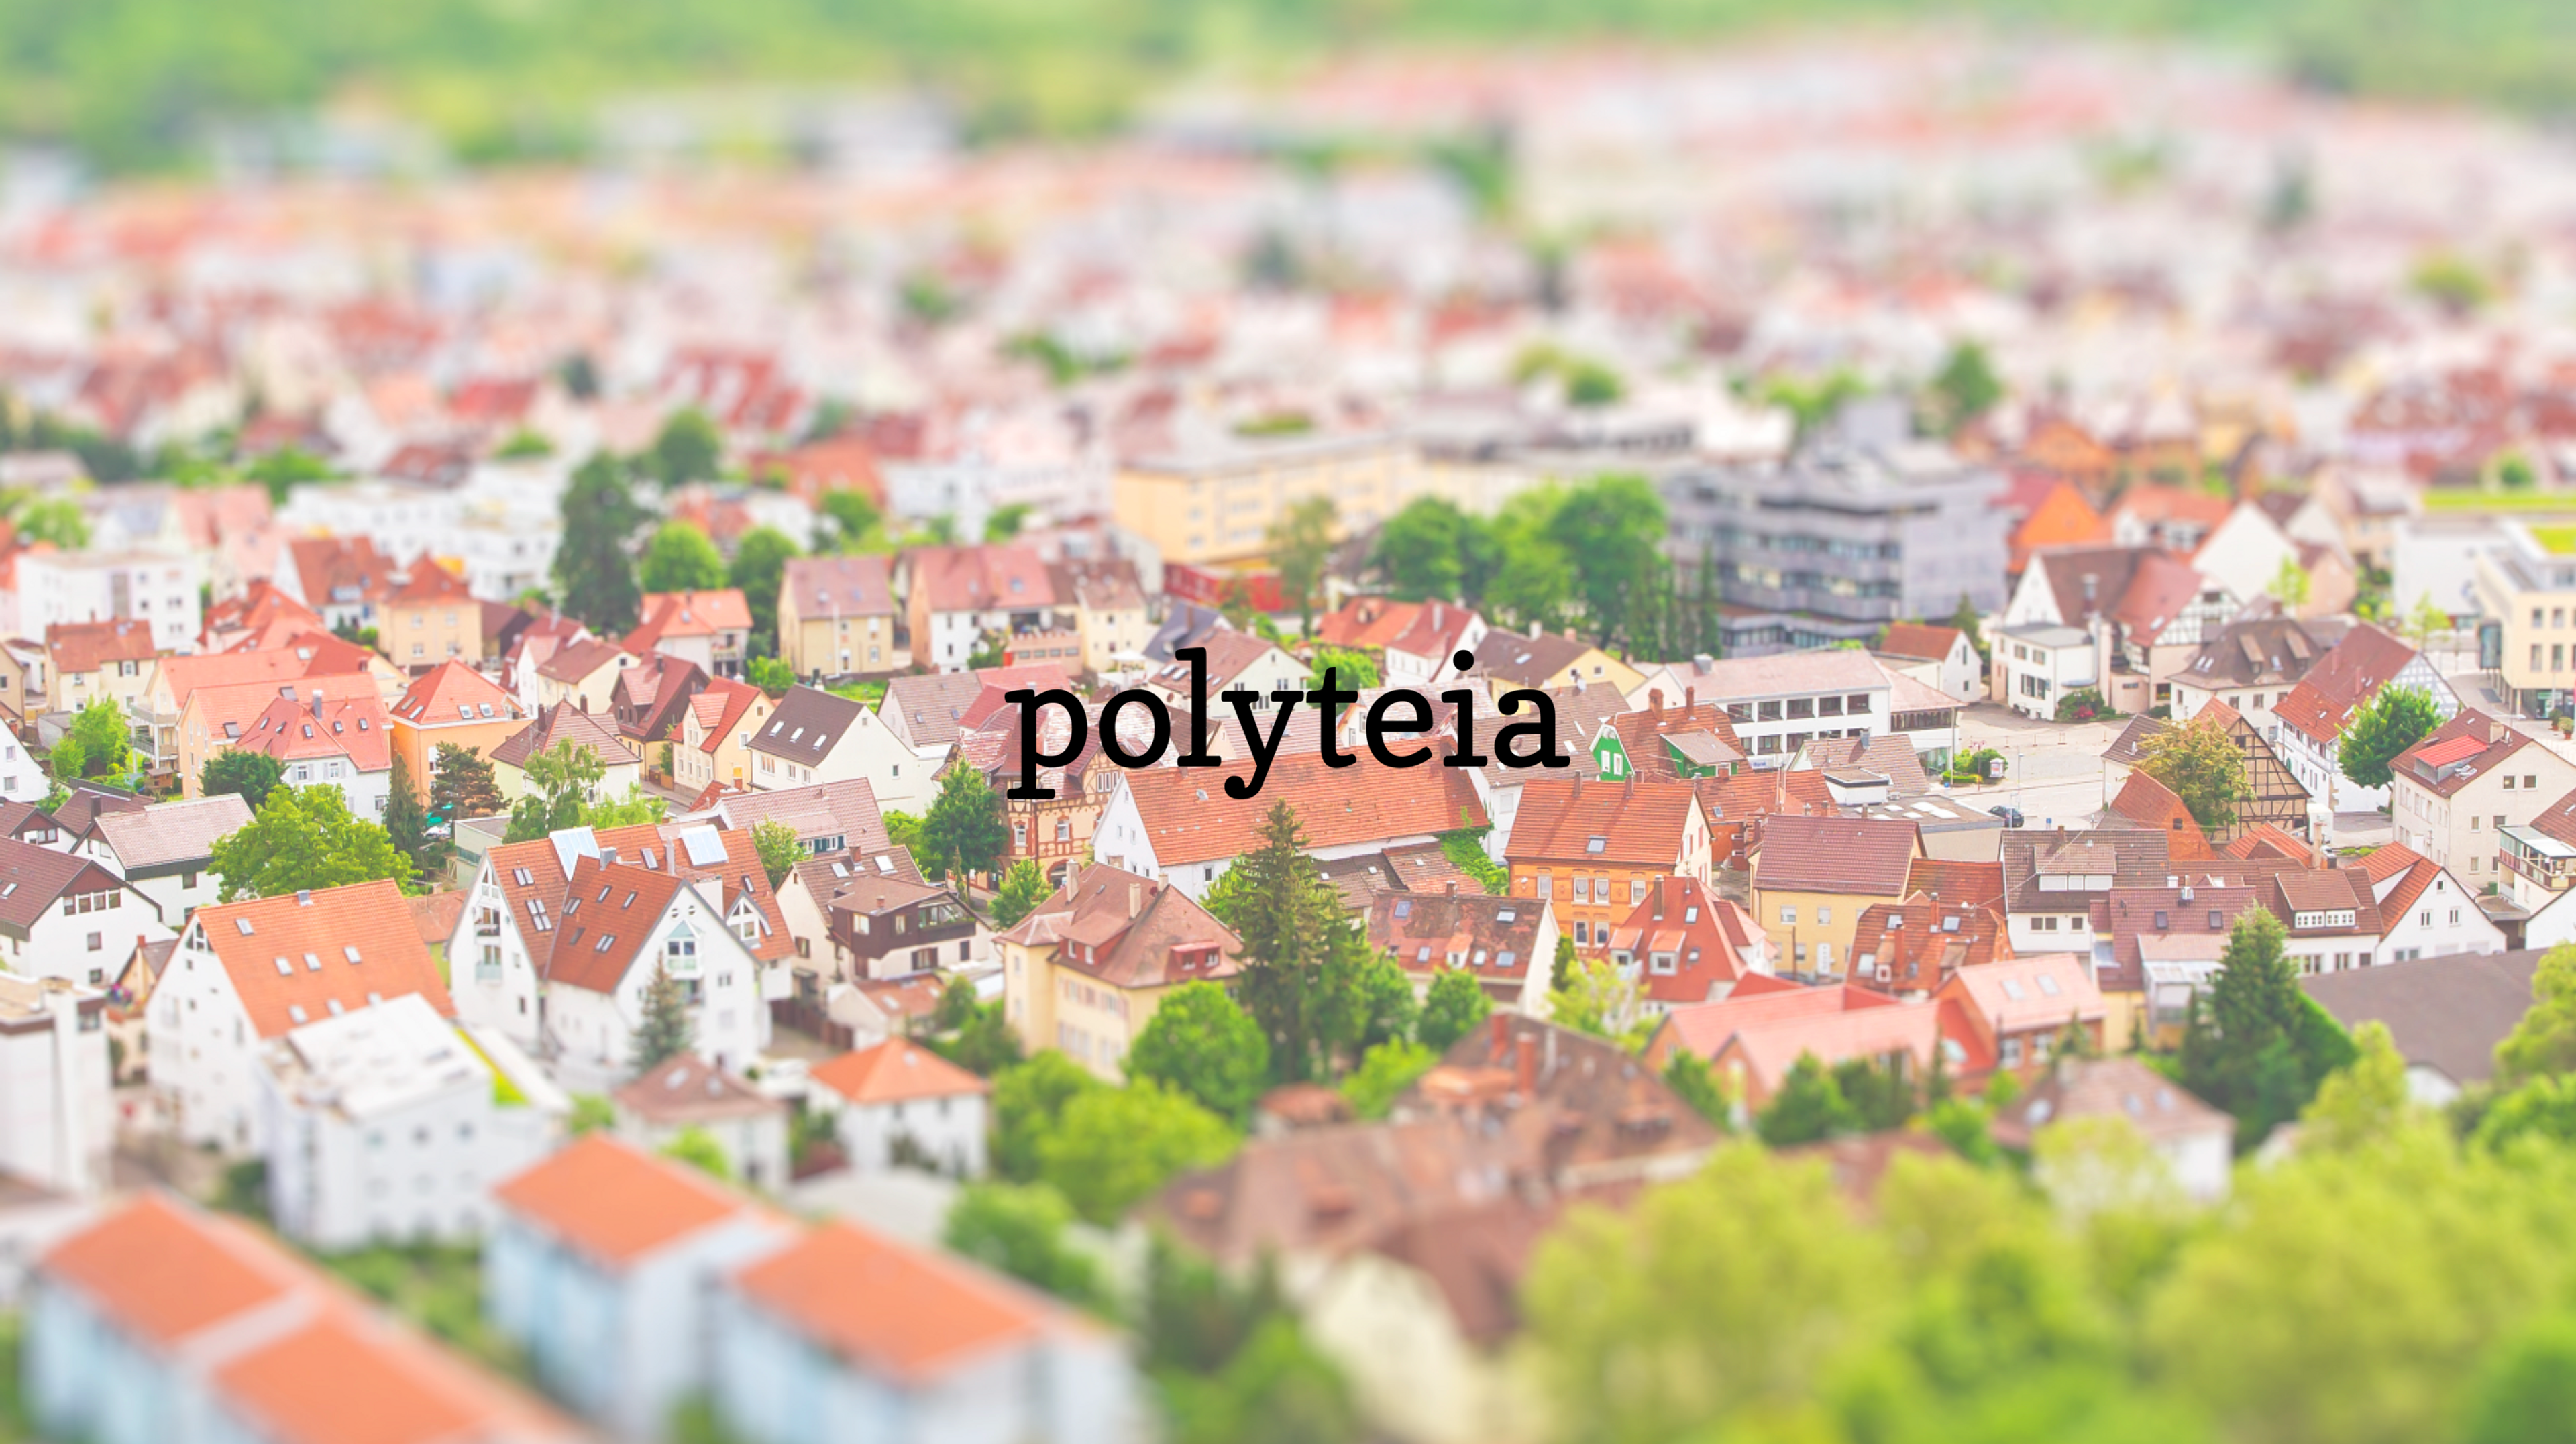 Polyteia & Circula: eine kleine Erfolgsgeschichte